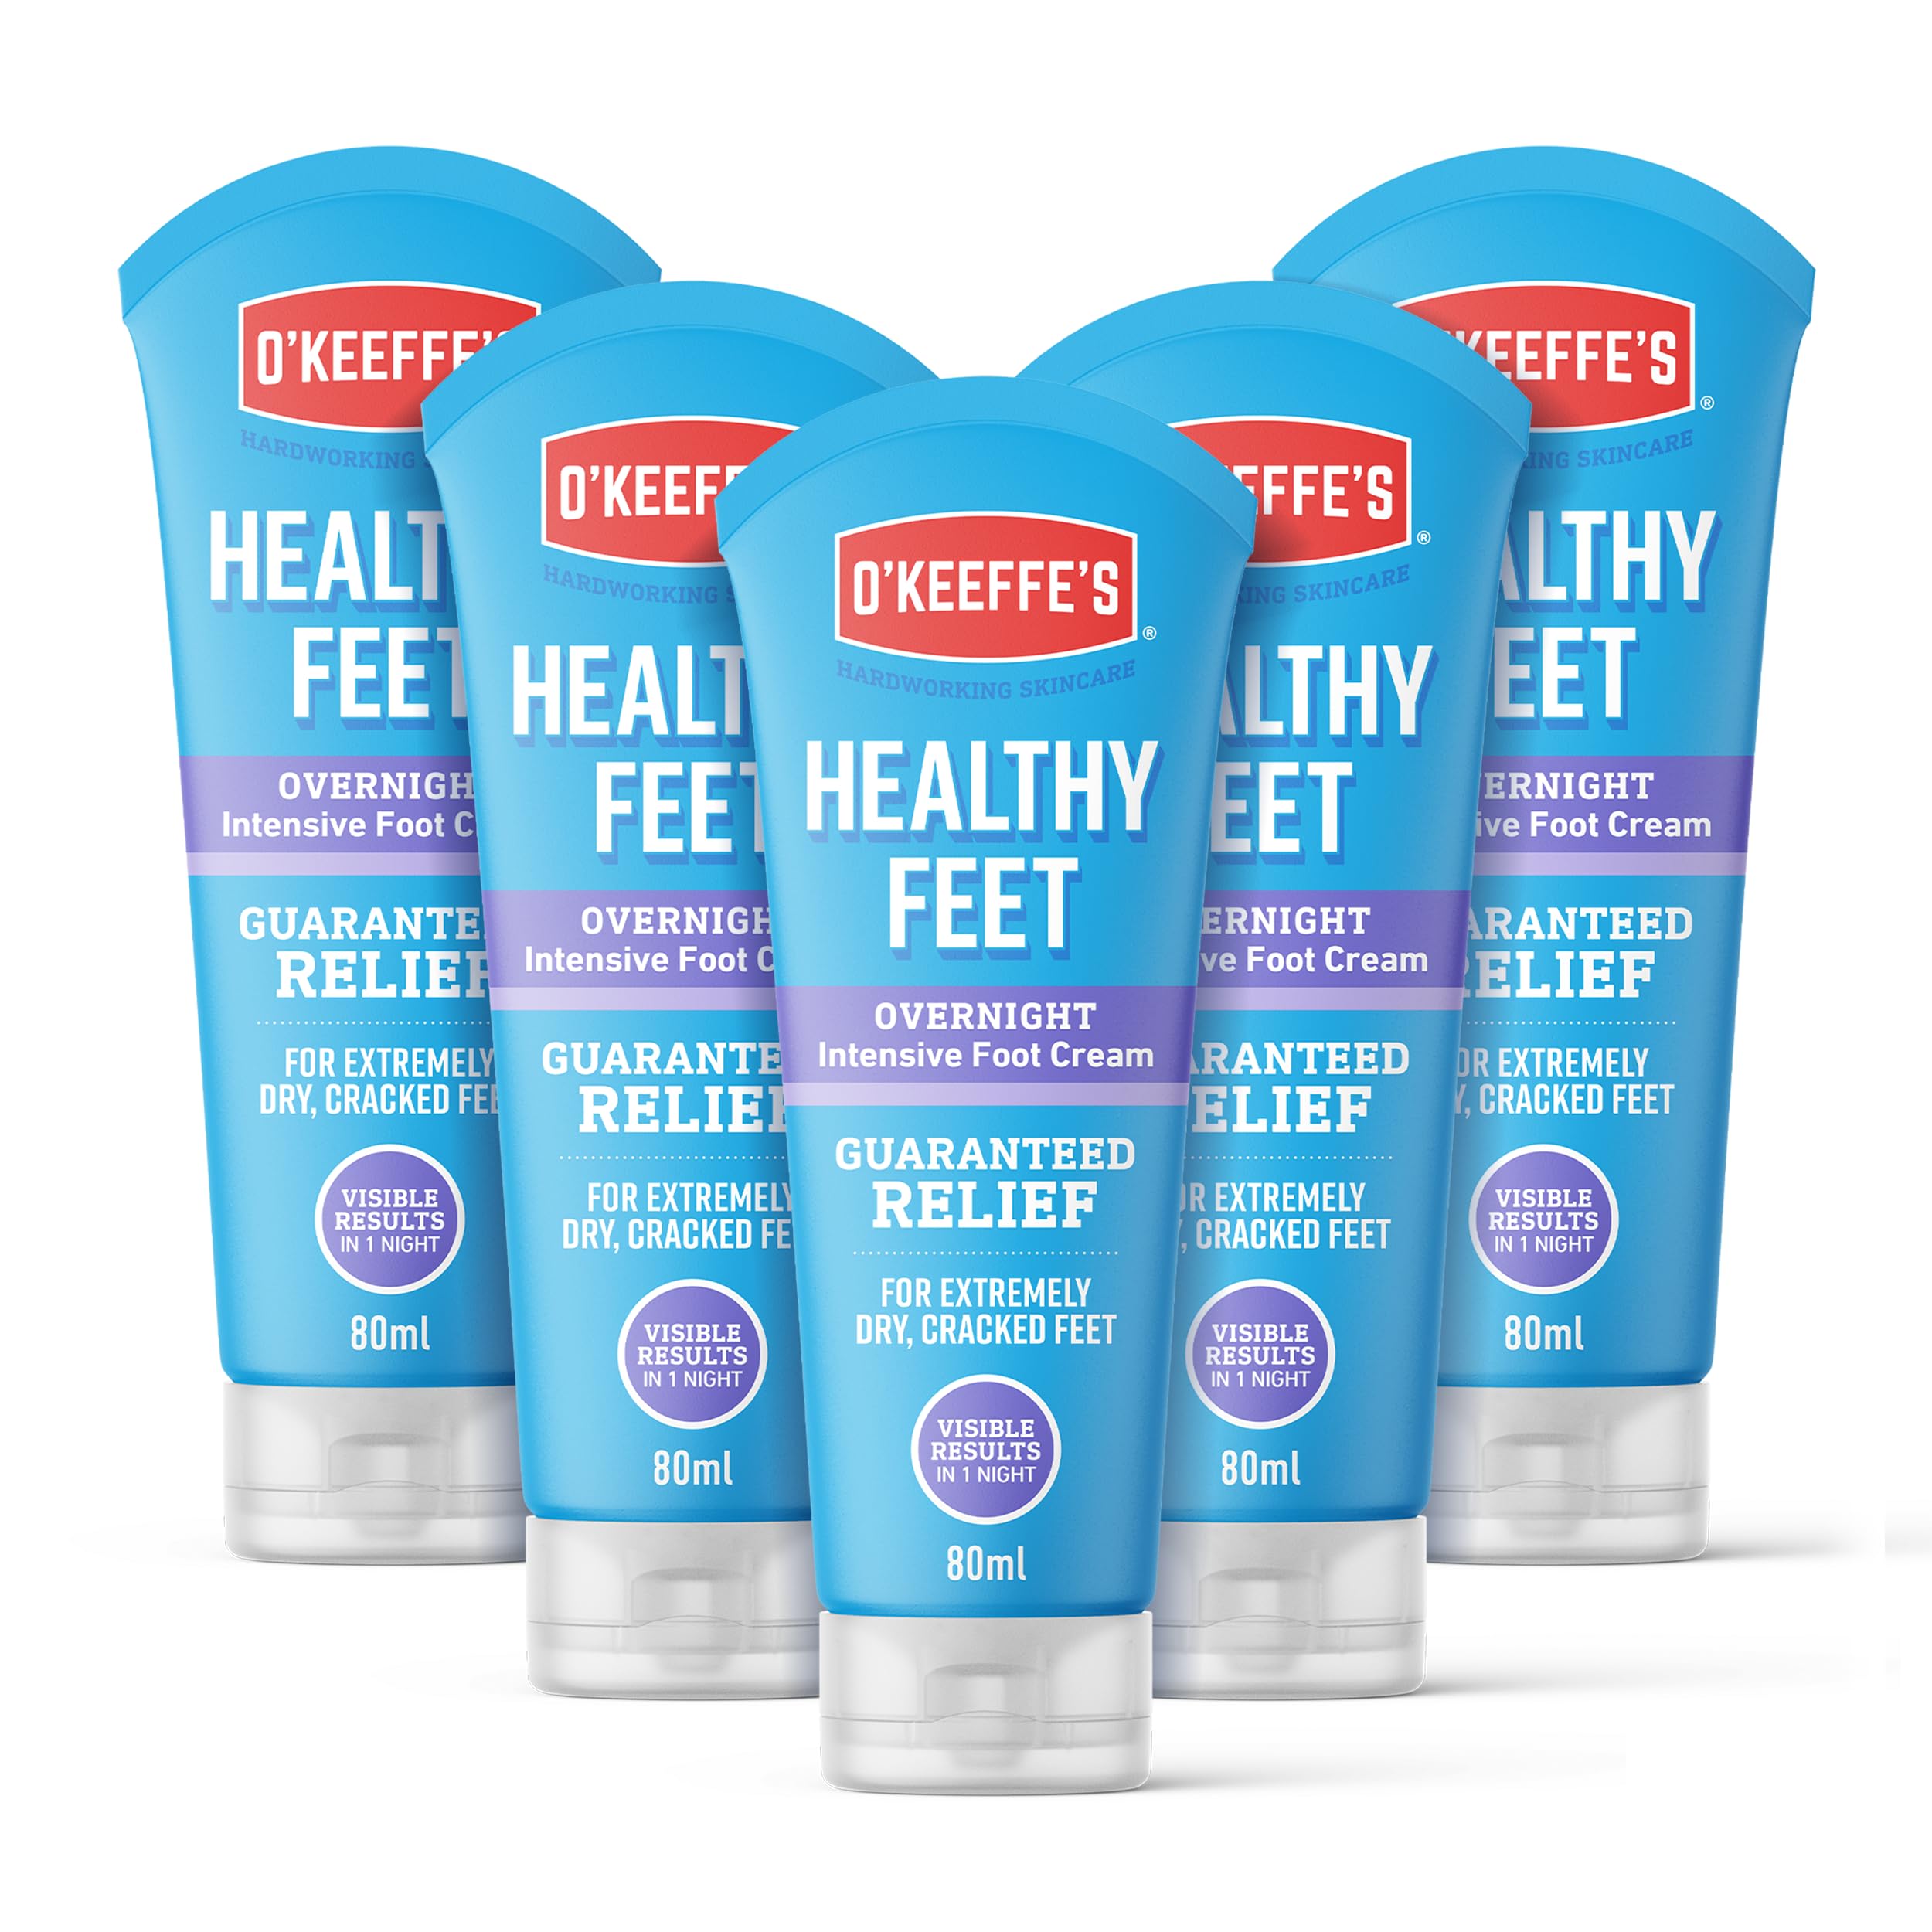 O'Keeffe's Healthy Feet Overnight, 5 x 80ml Tuben - intensive Fußcreme für extrem trockene, rissige Füße | sichtbare Ergebnisse in 1 Nacht